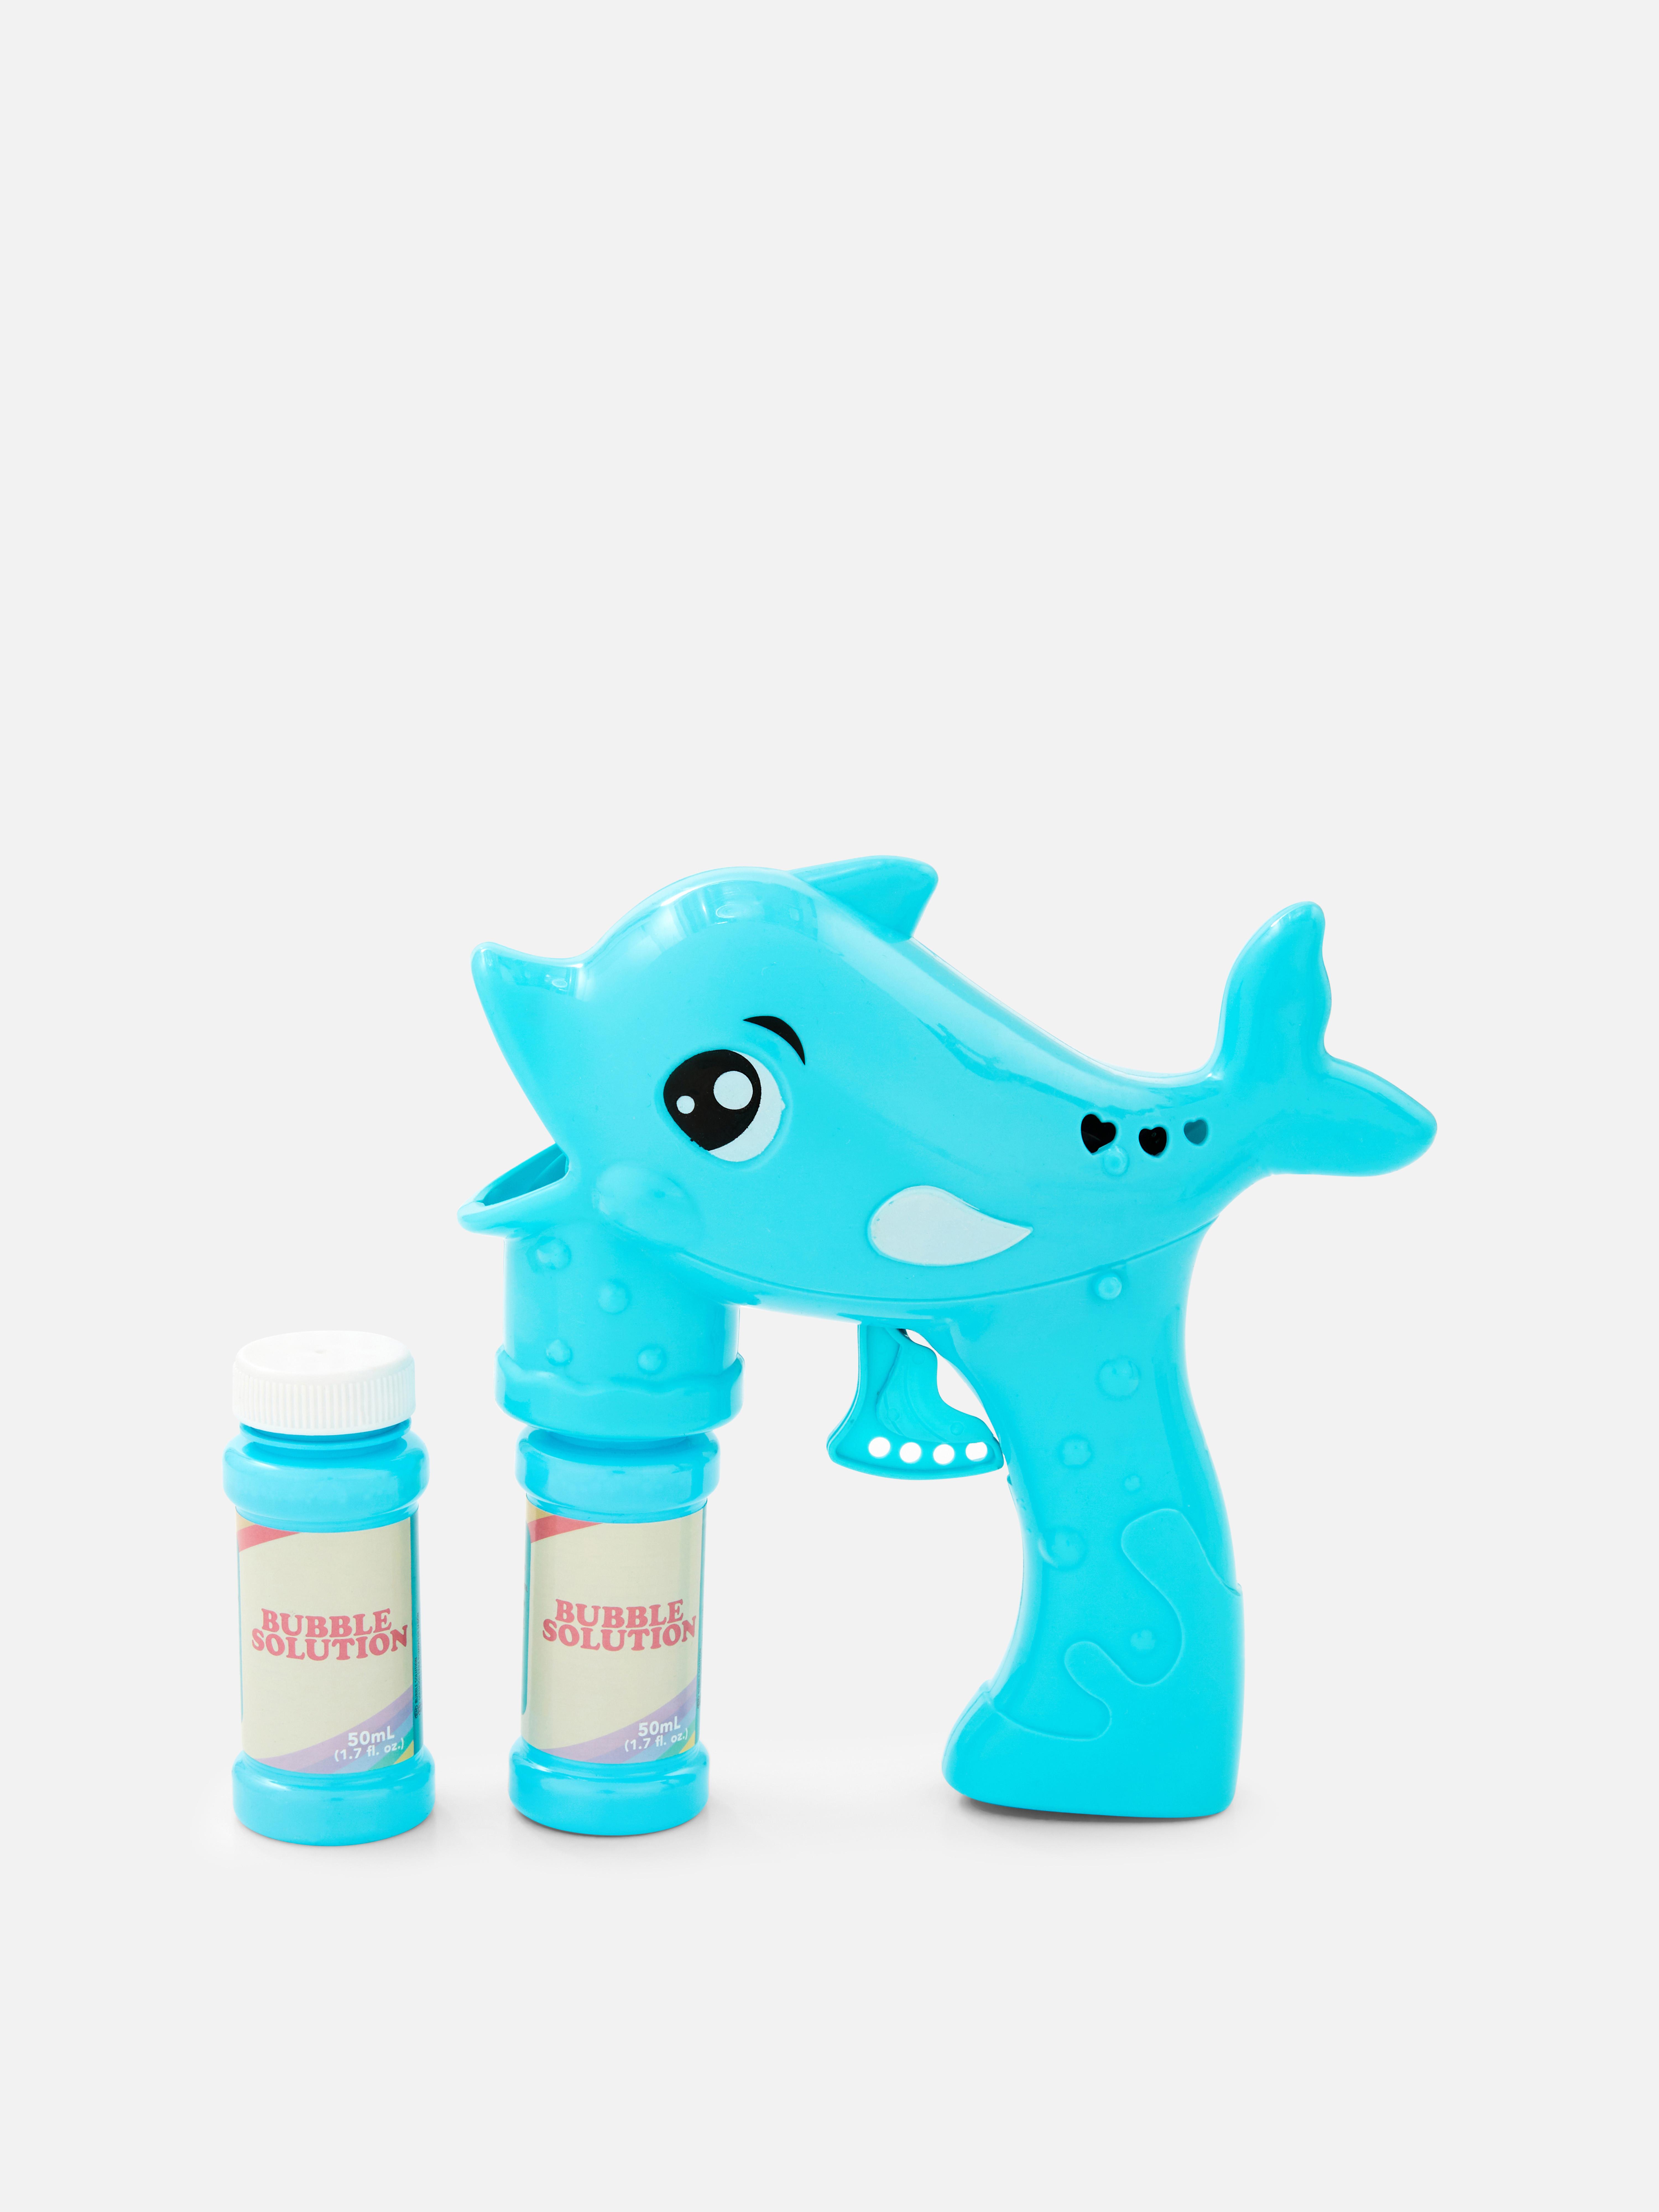 Delfinspielzeug mit Seifenblasenlösung